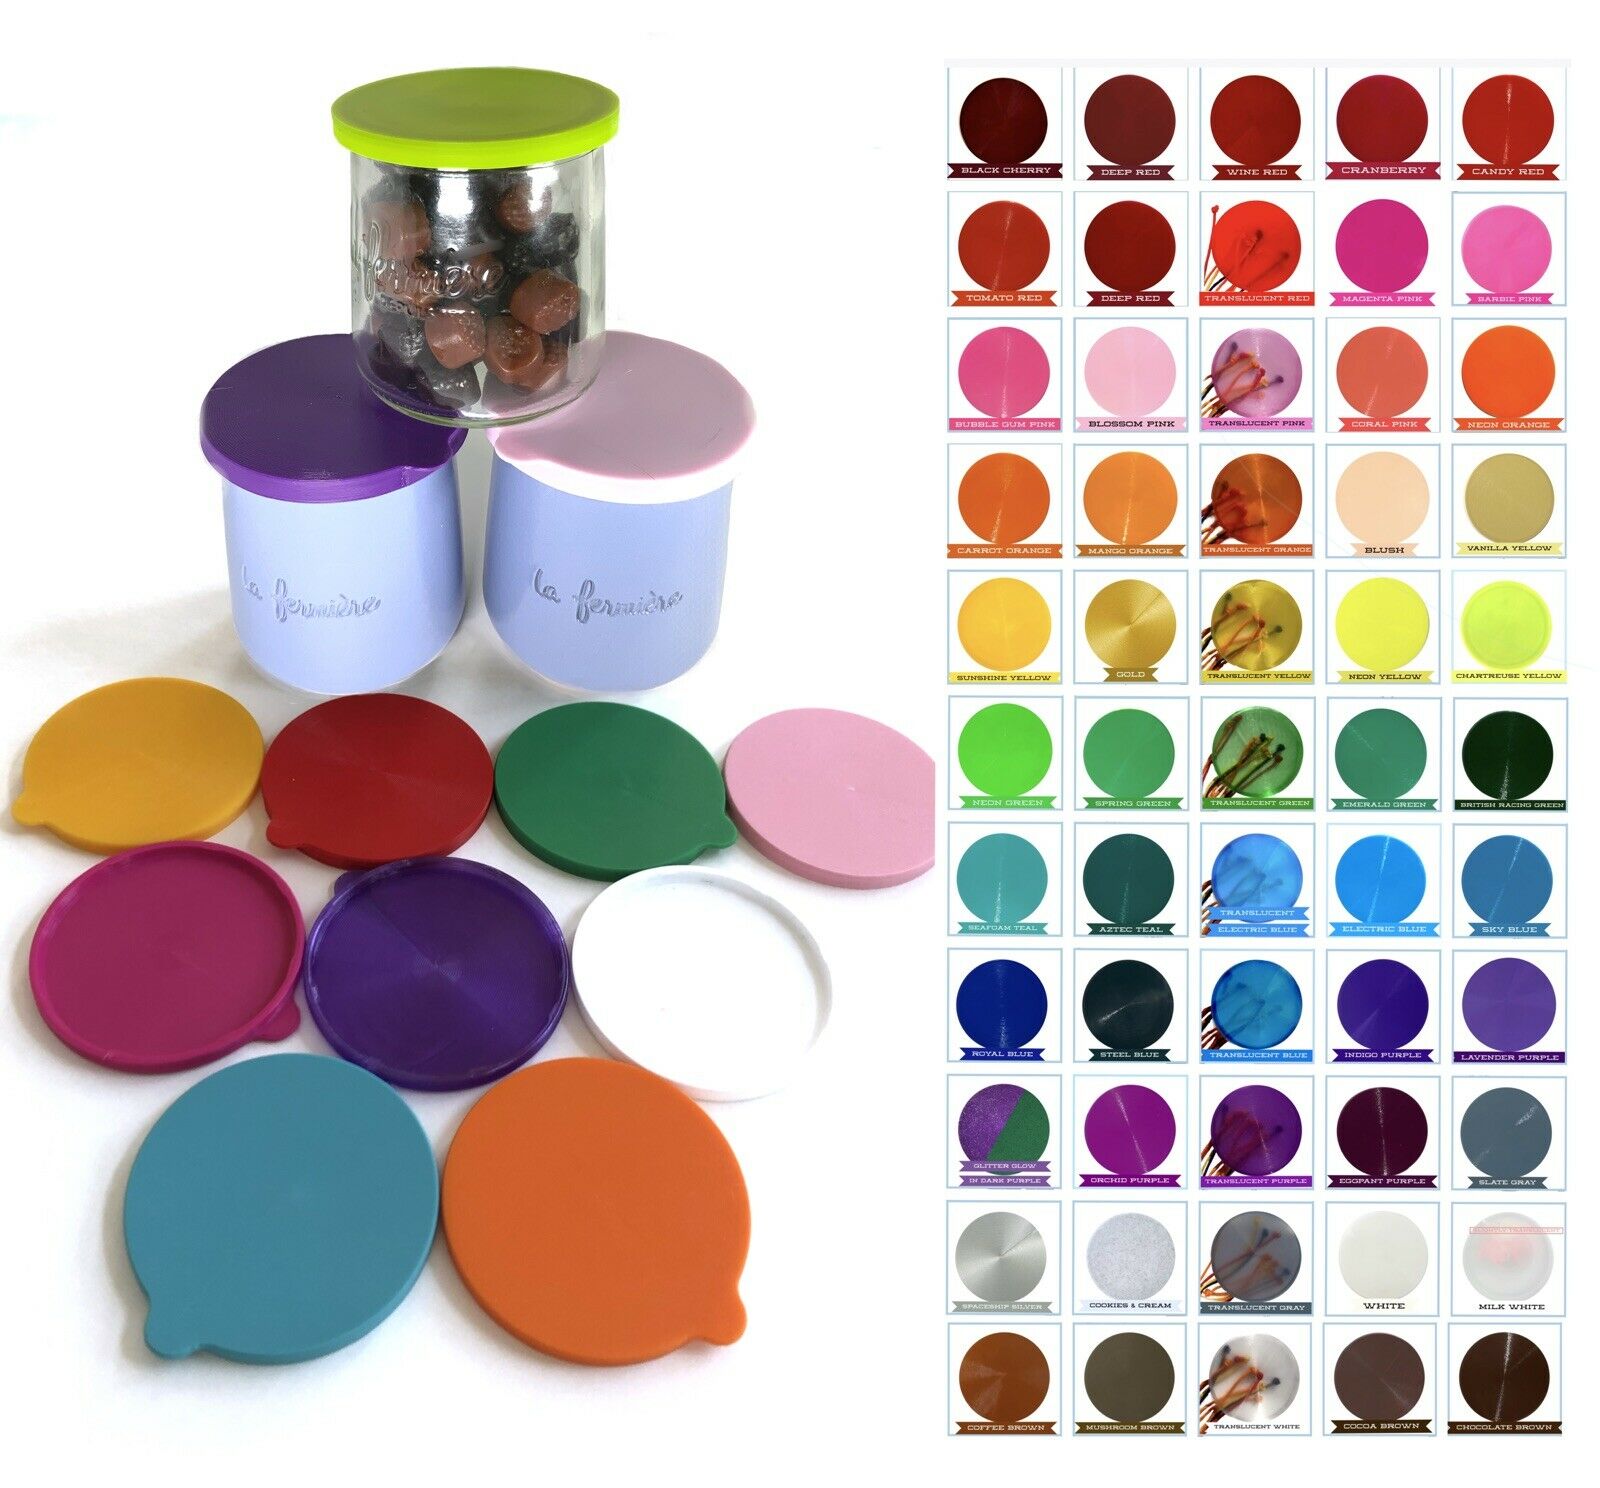 LA FERMIERE Yogurt jar lids WITHOUT TABS --   Pick Your Colors -  ❤️  68 Colors